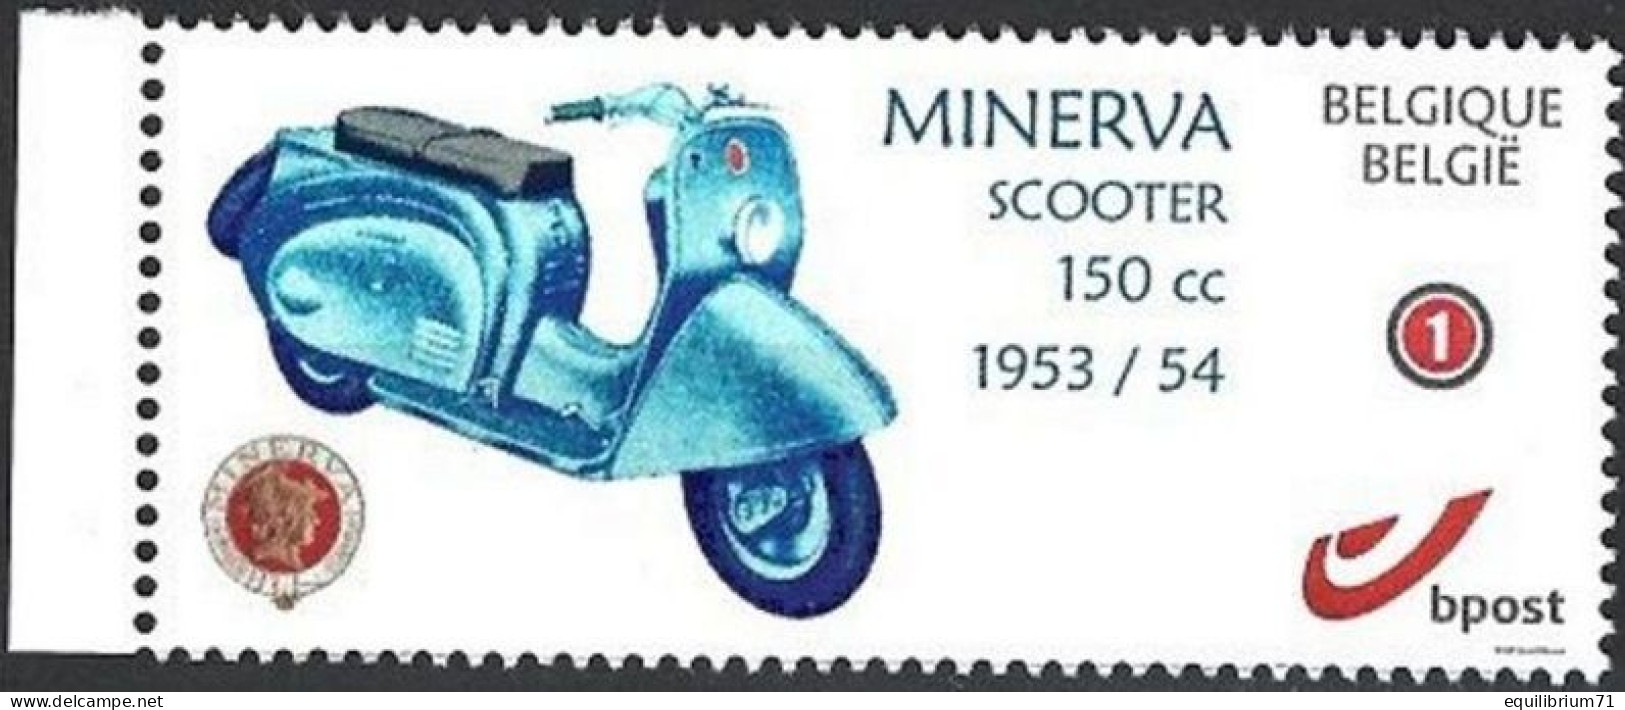 DUOSTAMP** / MYSTAMP** - Minerva Scooter 150CC - 1953/1954 - Motorfietsen